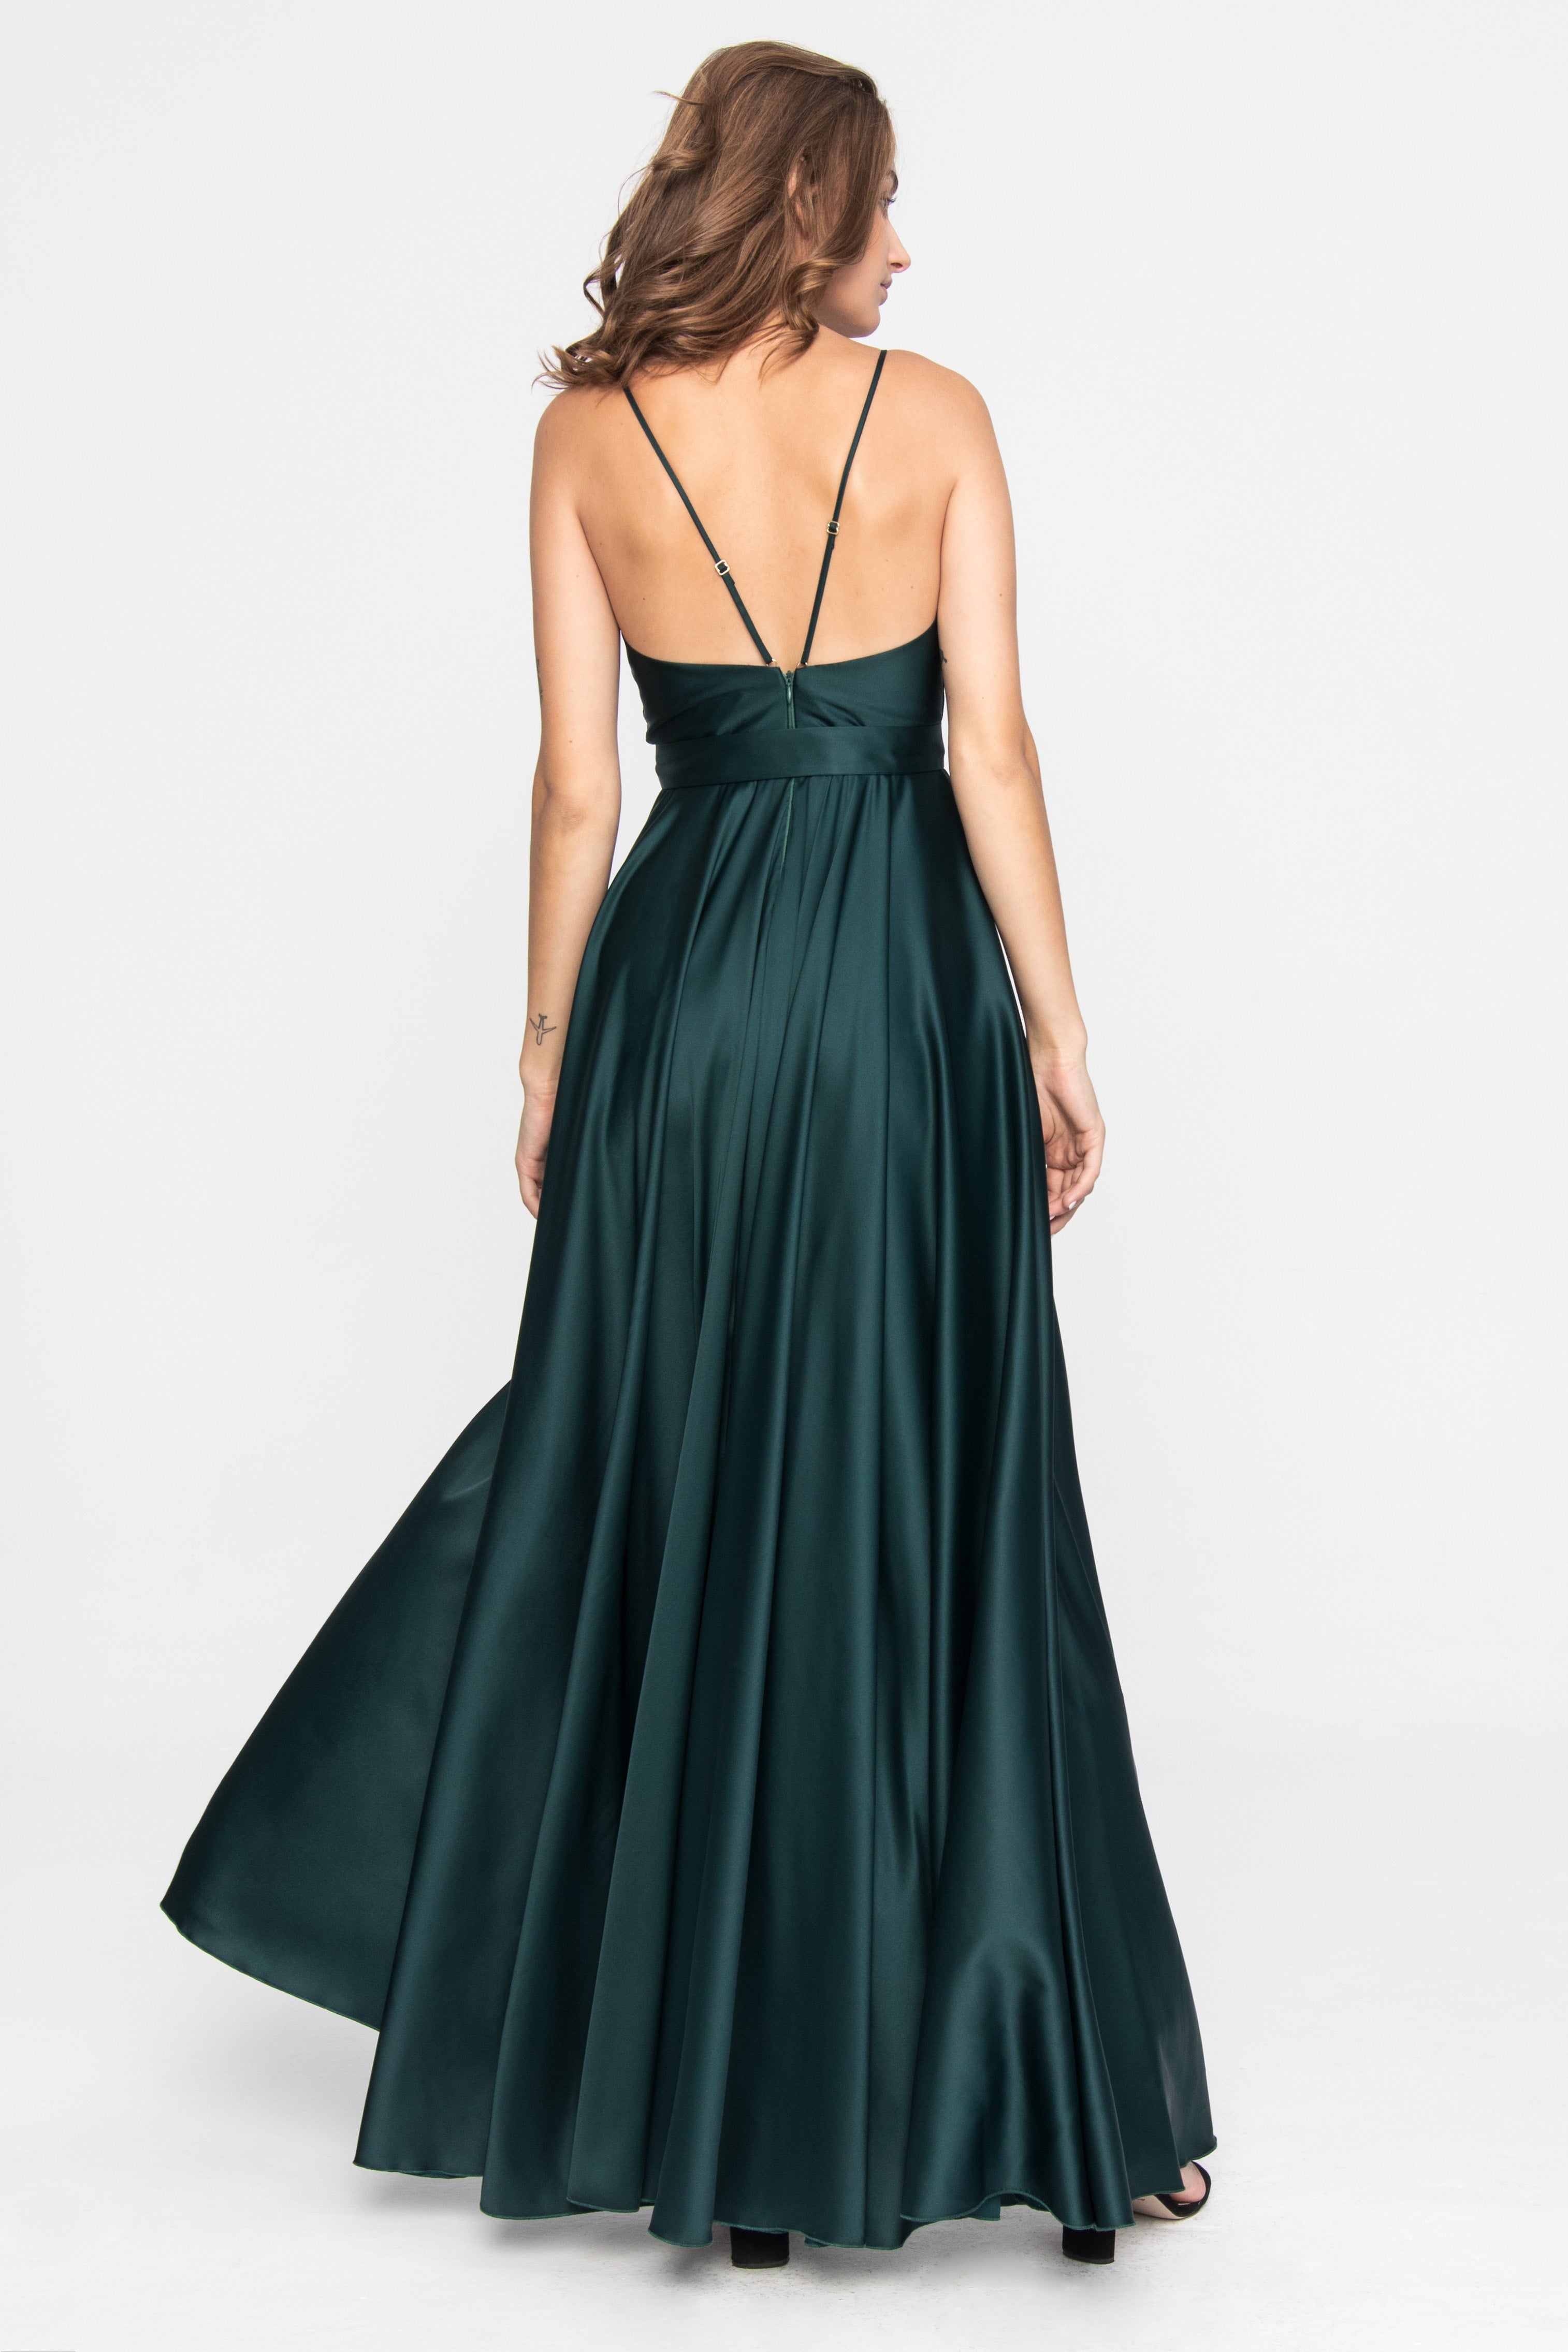 Satin Long Dress Emerald green